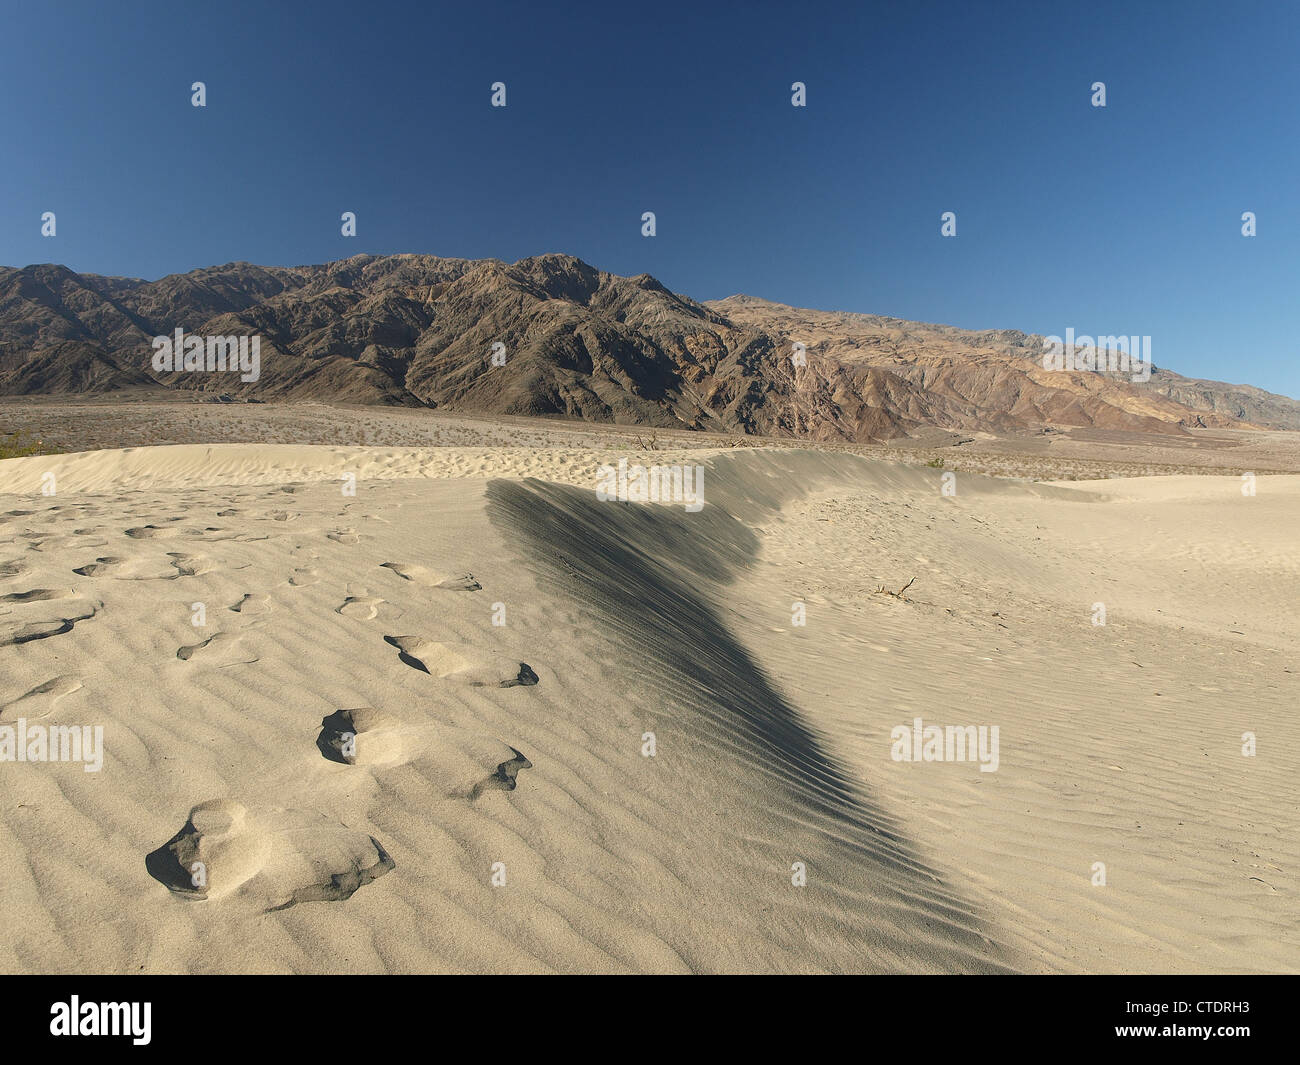 Fußabdrücke in Sanddünen im Death Valley, eine Wüste und Berge Landschaft im Hintergrund. Stockfoto